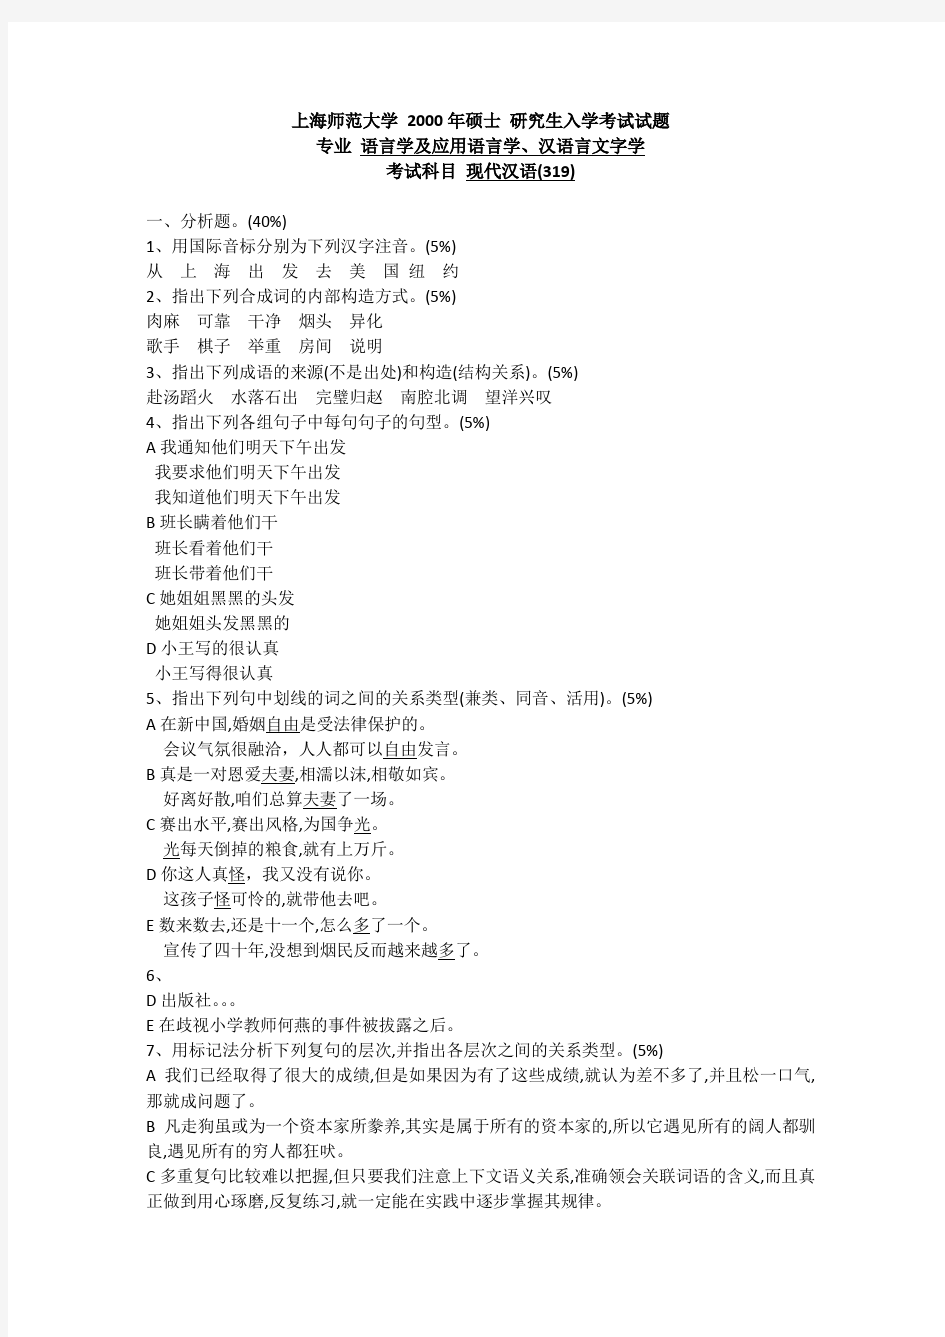 上海师范大学文学院现代汉语真题(2000-2019)真题汇总